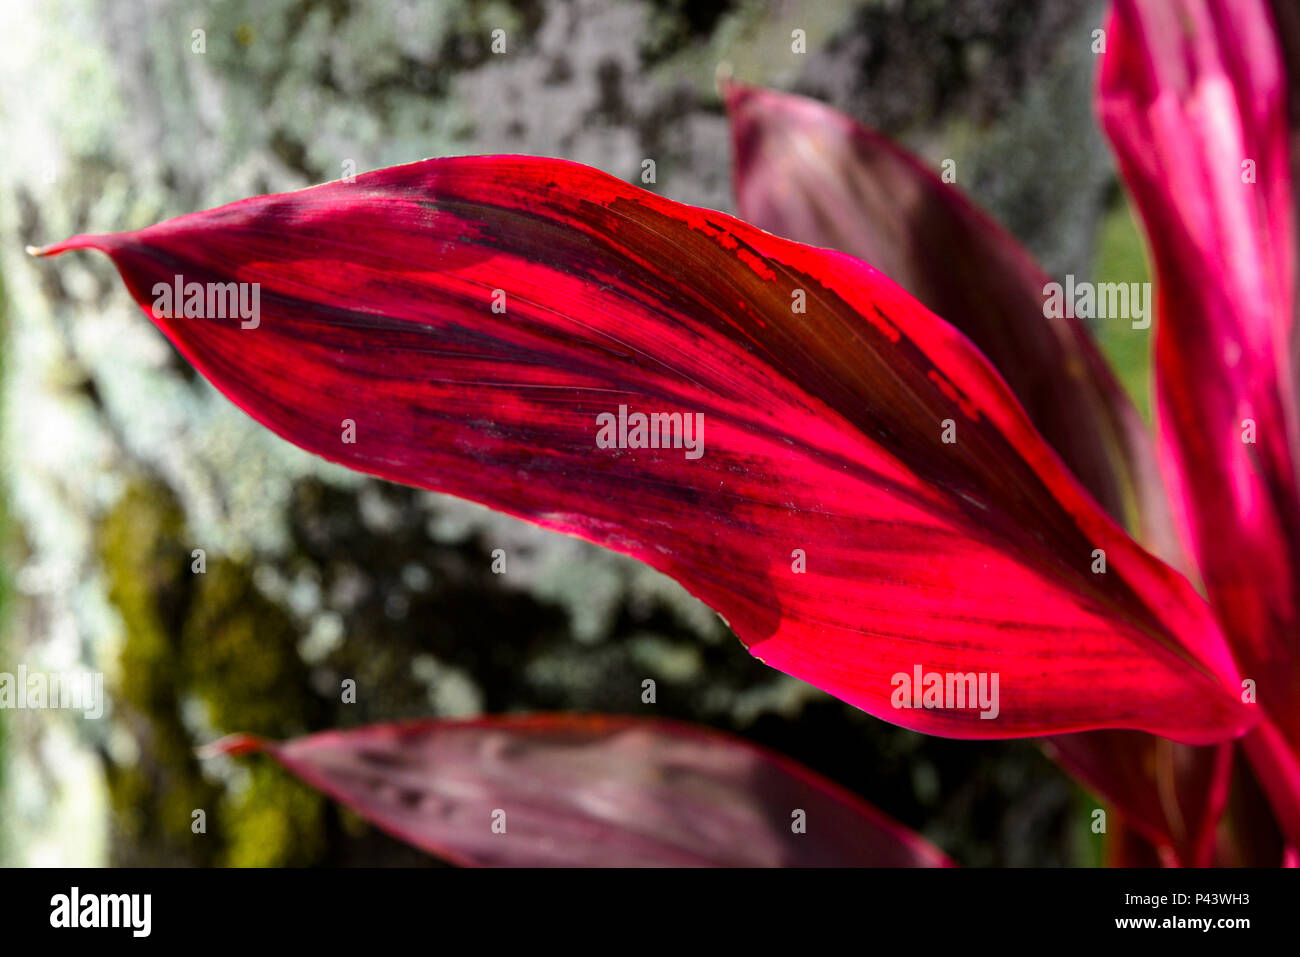 Alexandre carvalho alefotos natureza flor flores planta folha vermelha  hi-res stock photography and images - Alamy